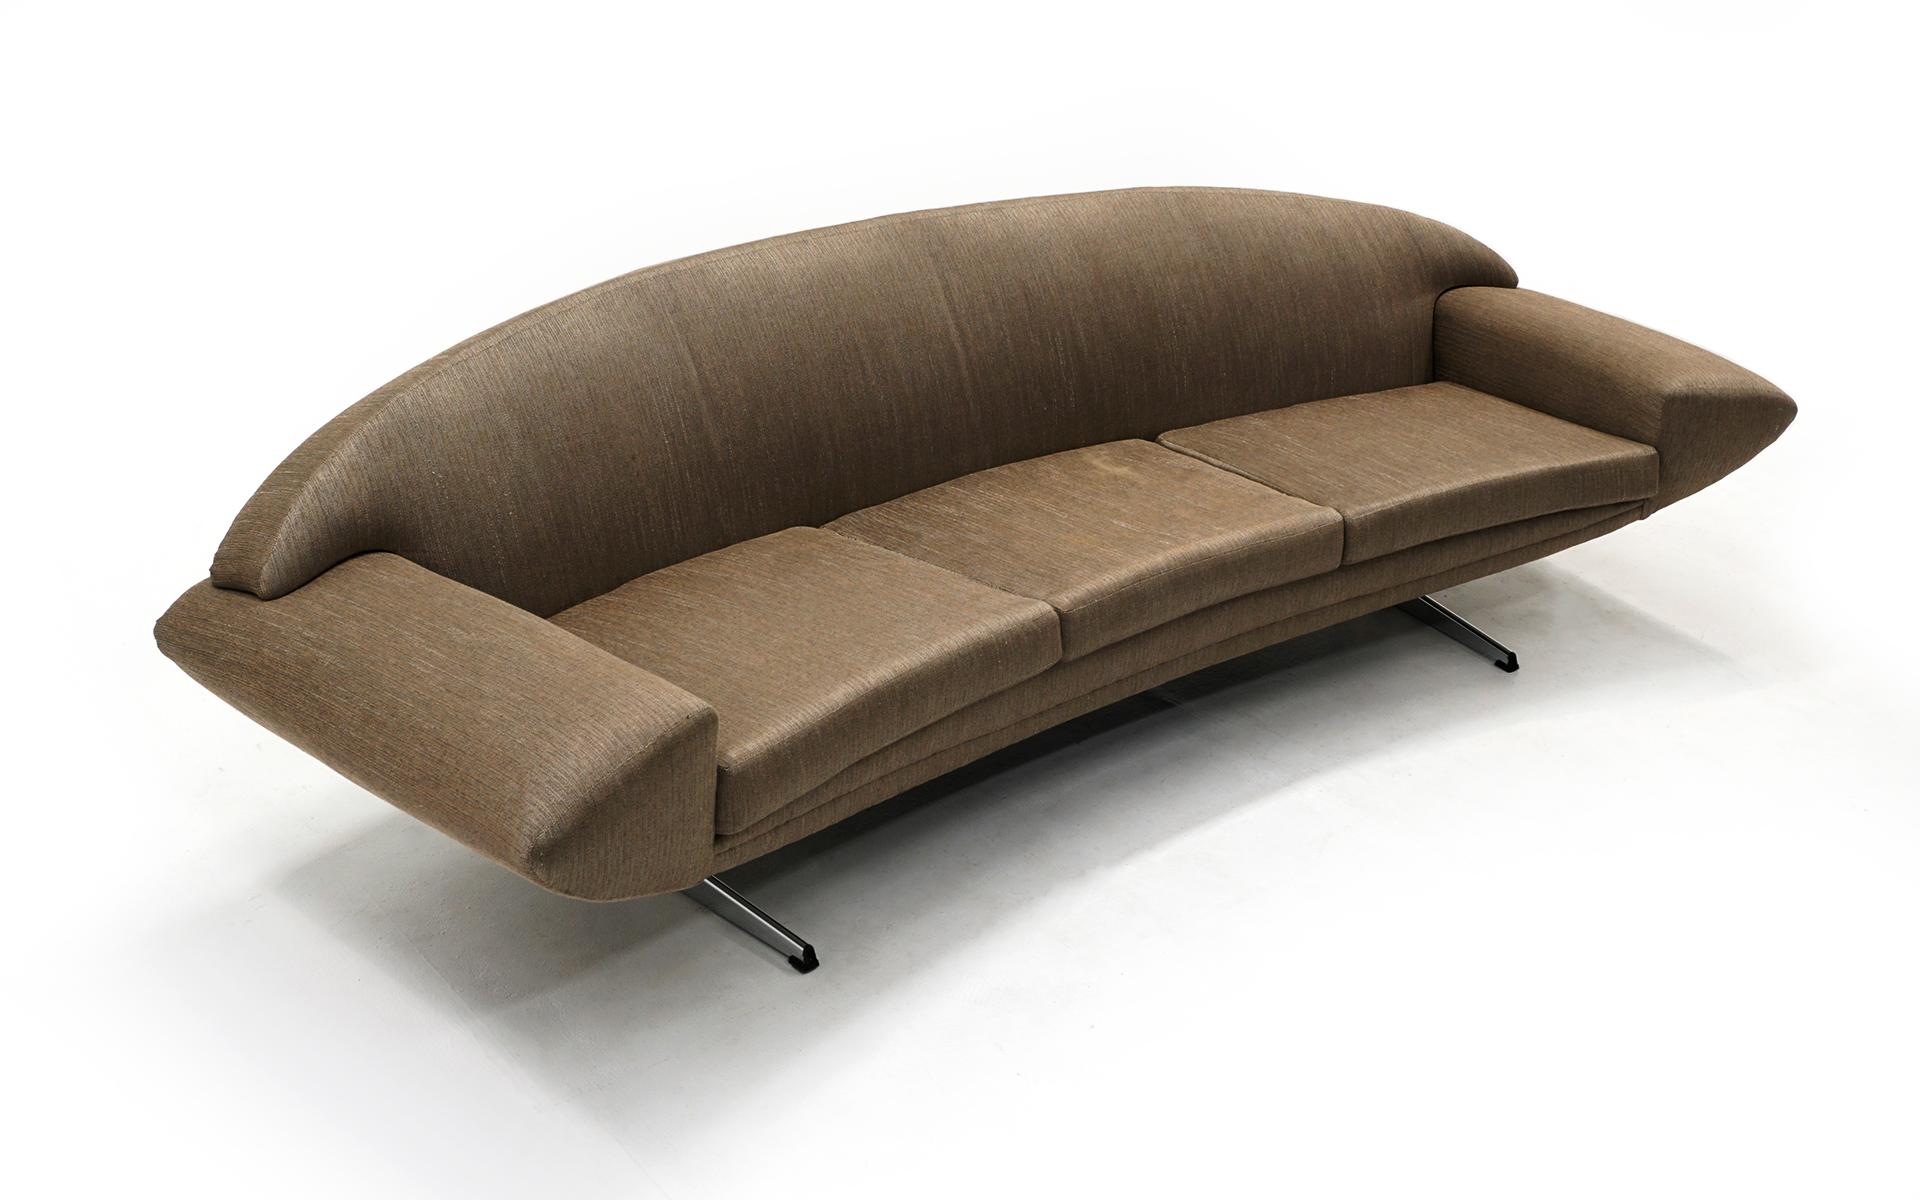 Seltenes Sofa Capri, entworfen von Johannes Andersen. Produziert von Trensum, Schweden, 1960. Bei diesem schönen Exemplar ist die Originalpolsterung in gutem Zustand erhalten. Es gibt ein paar helle Flecken, so dass der Käufer möchte, um zu